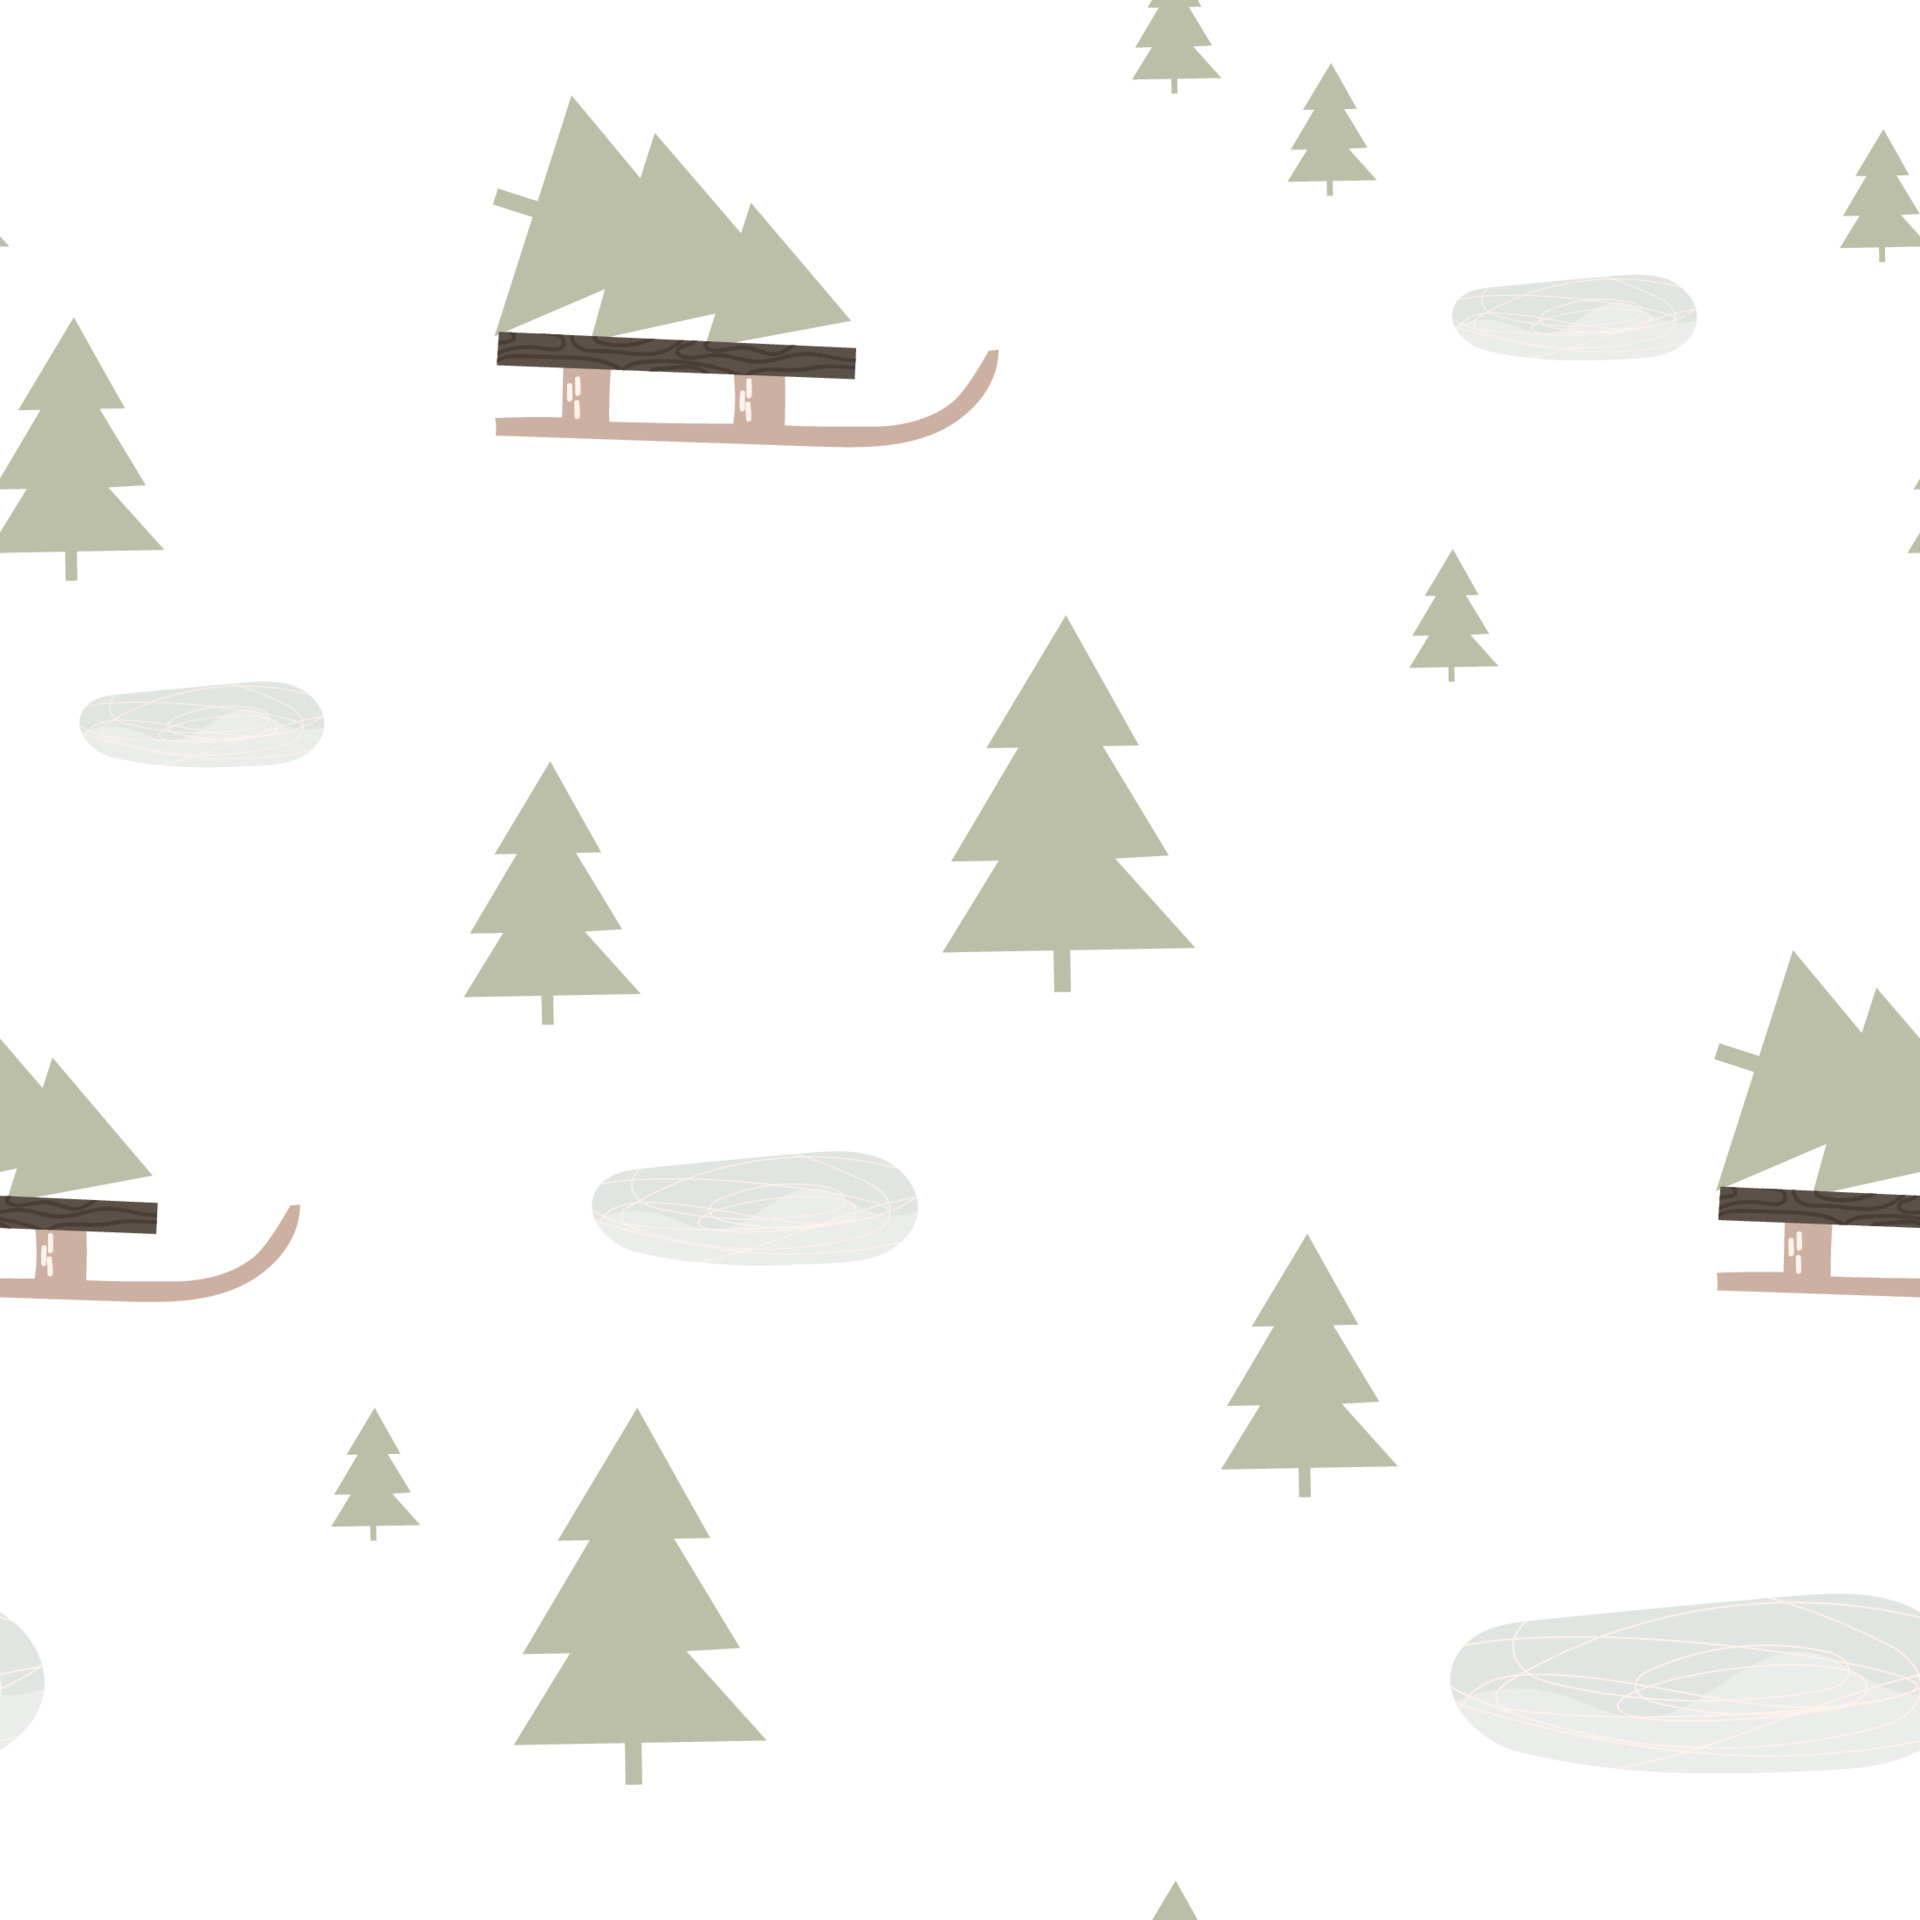 Mẫu vải Noel đơn giản: Mẫu vải Noel đơn giản sẽ mang đến cho bạn cảm giác bình yên và ấm áp cho mùa đông này. Những mẫu vải được thiết kế đơn giản, tinh tế nhưng không kém phần sang trọng sẽ giúp bạn tạo nên một không gian lễ hội ấm áp, đầy vui tươi và hạnh phúc.